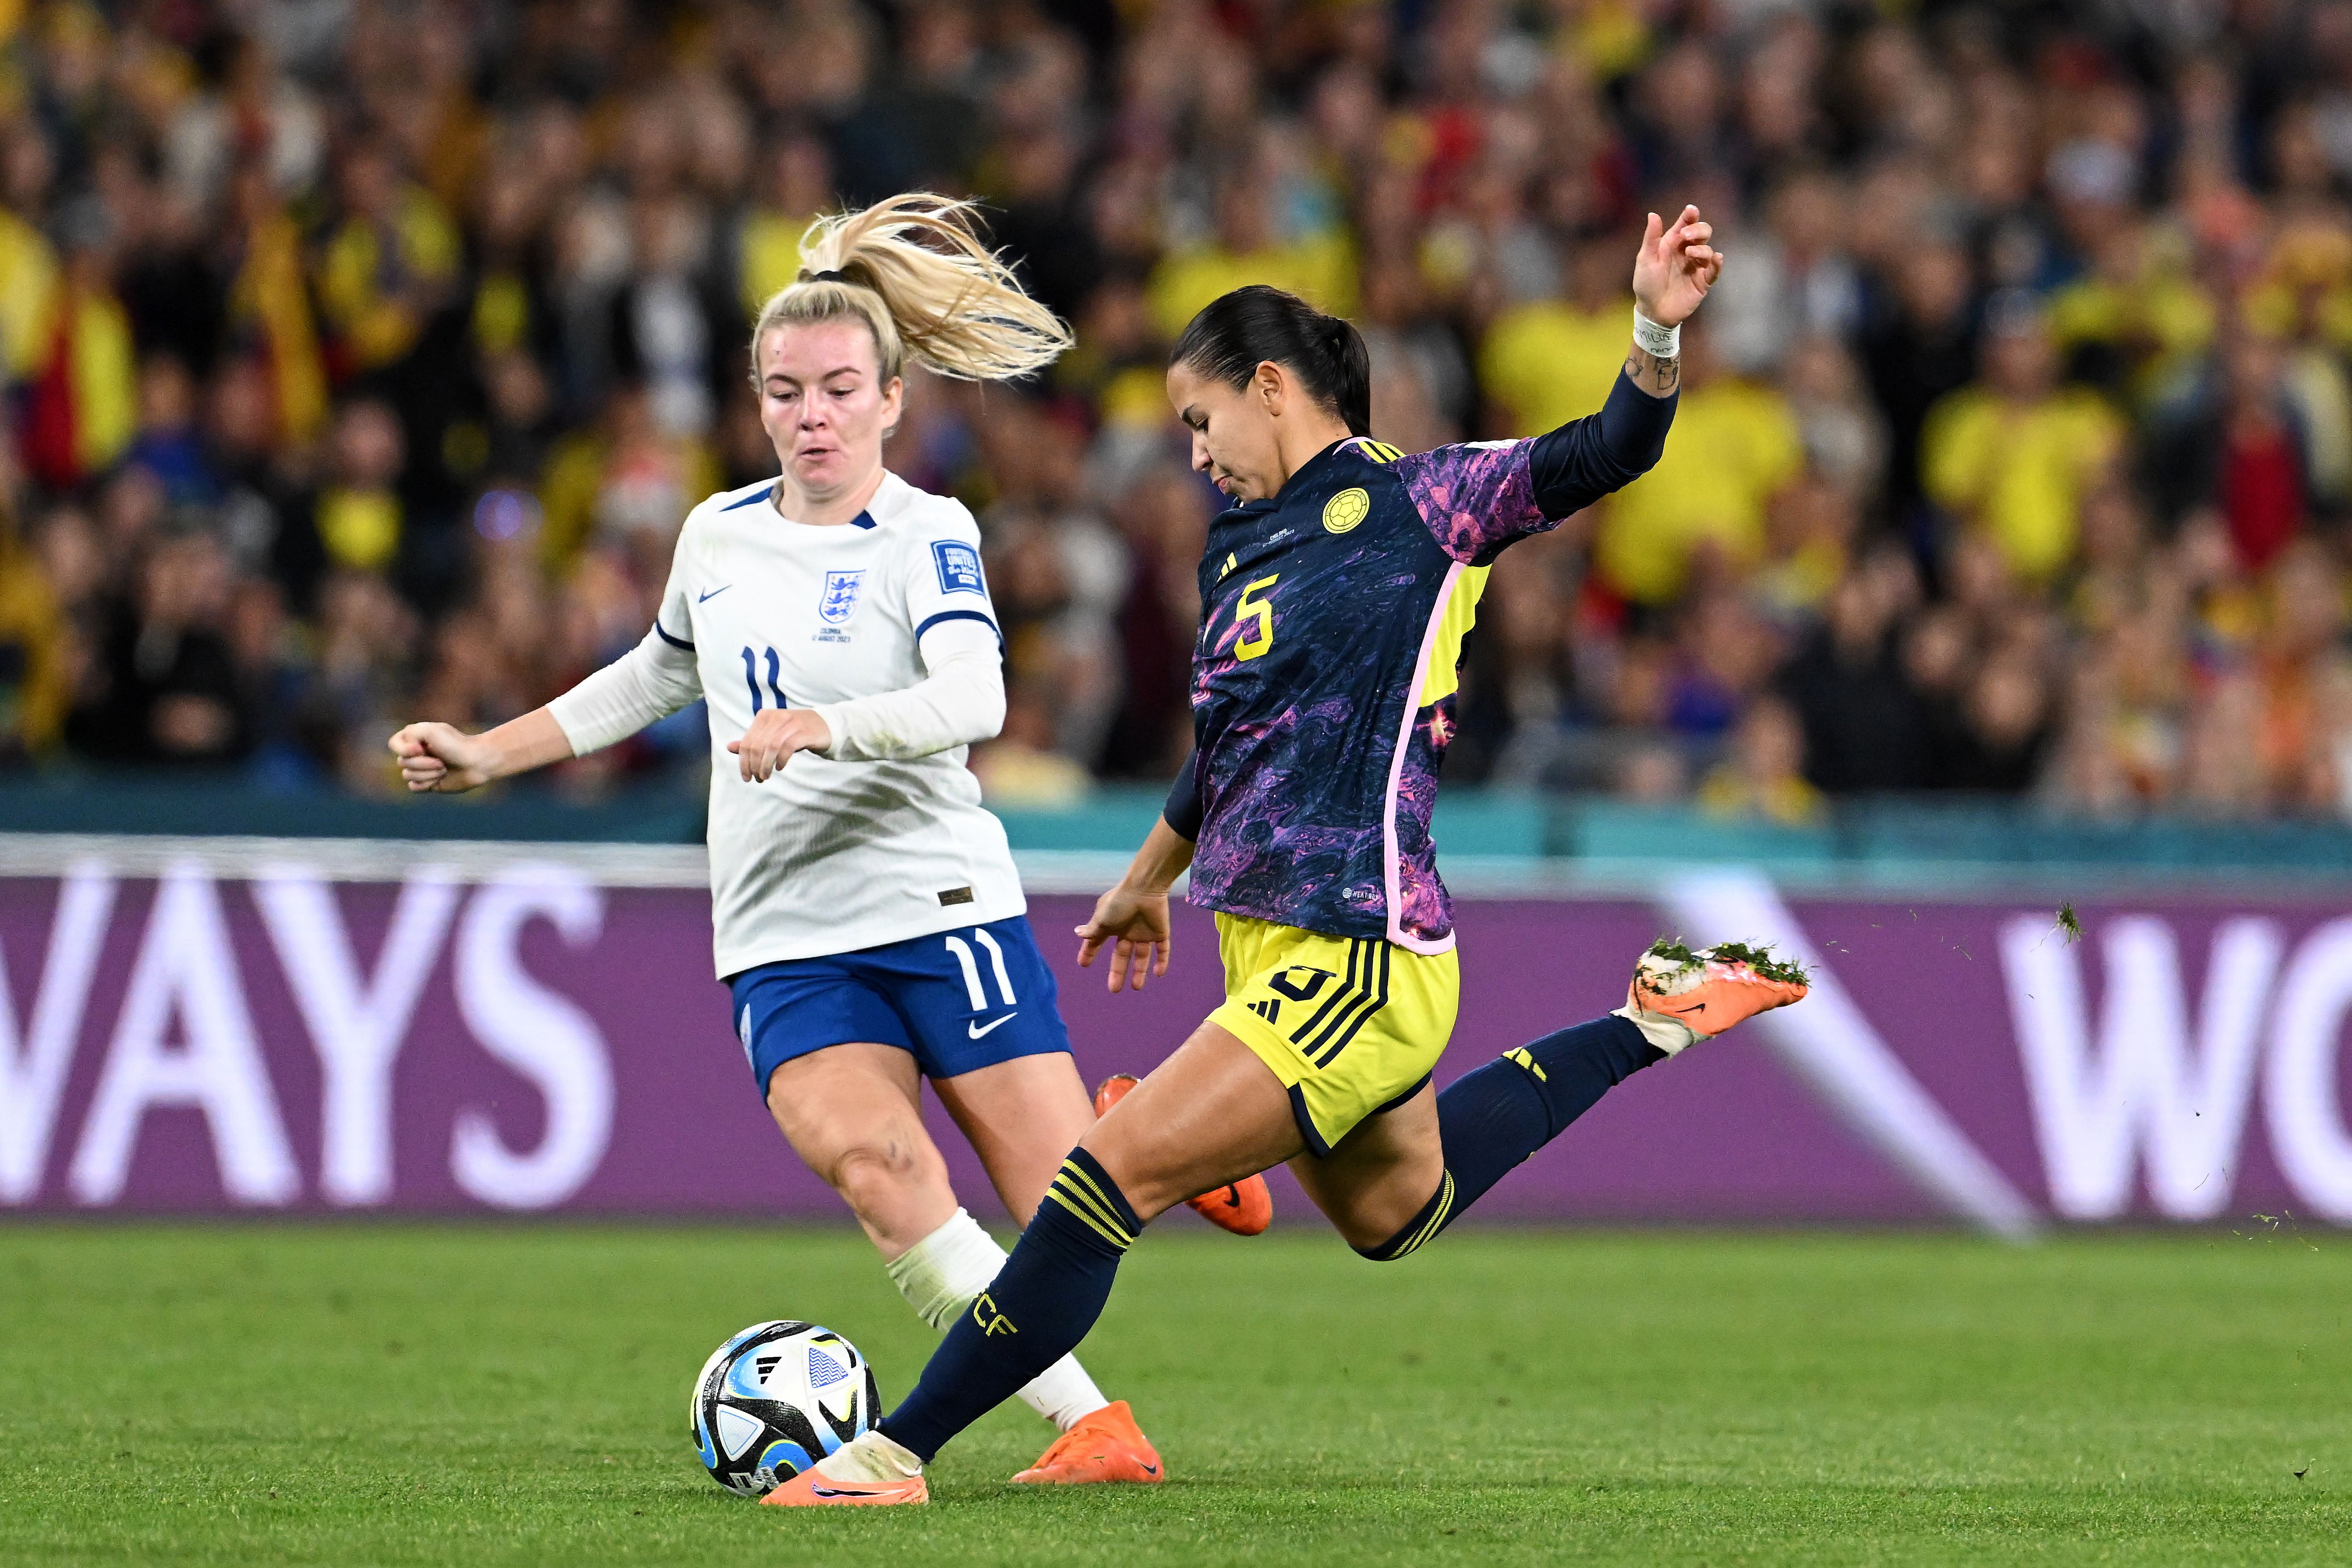 Colombia pierde con Inglaterra y se despide del sueño Mundial